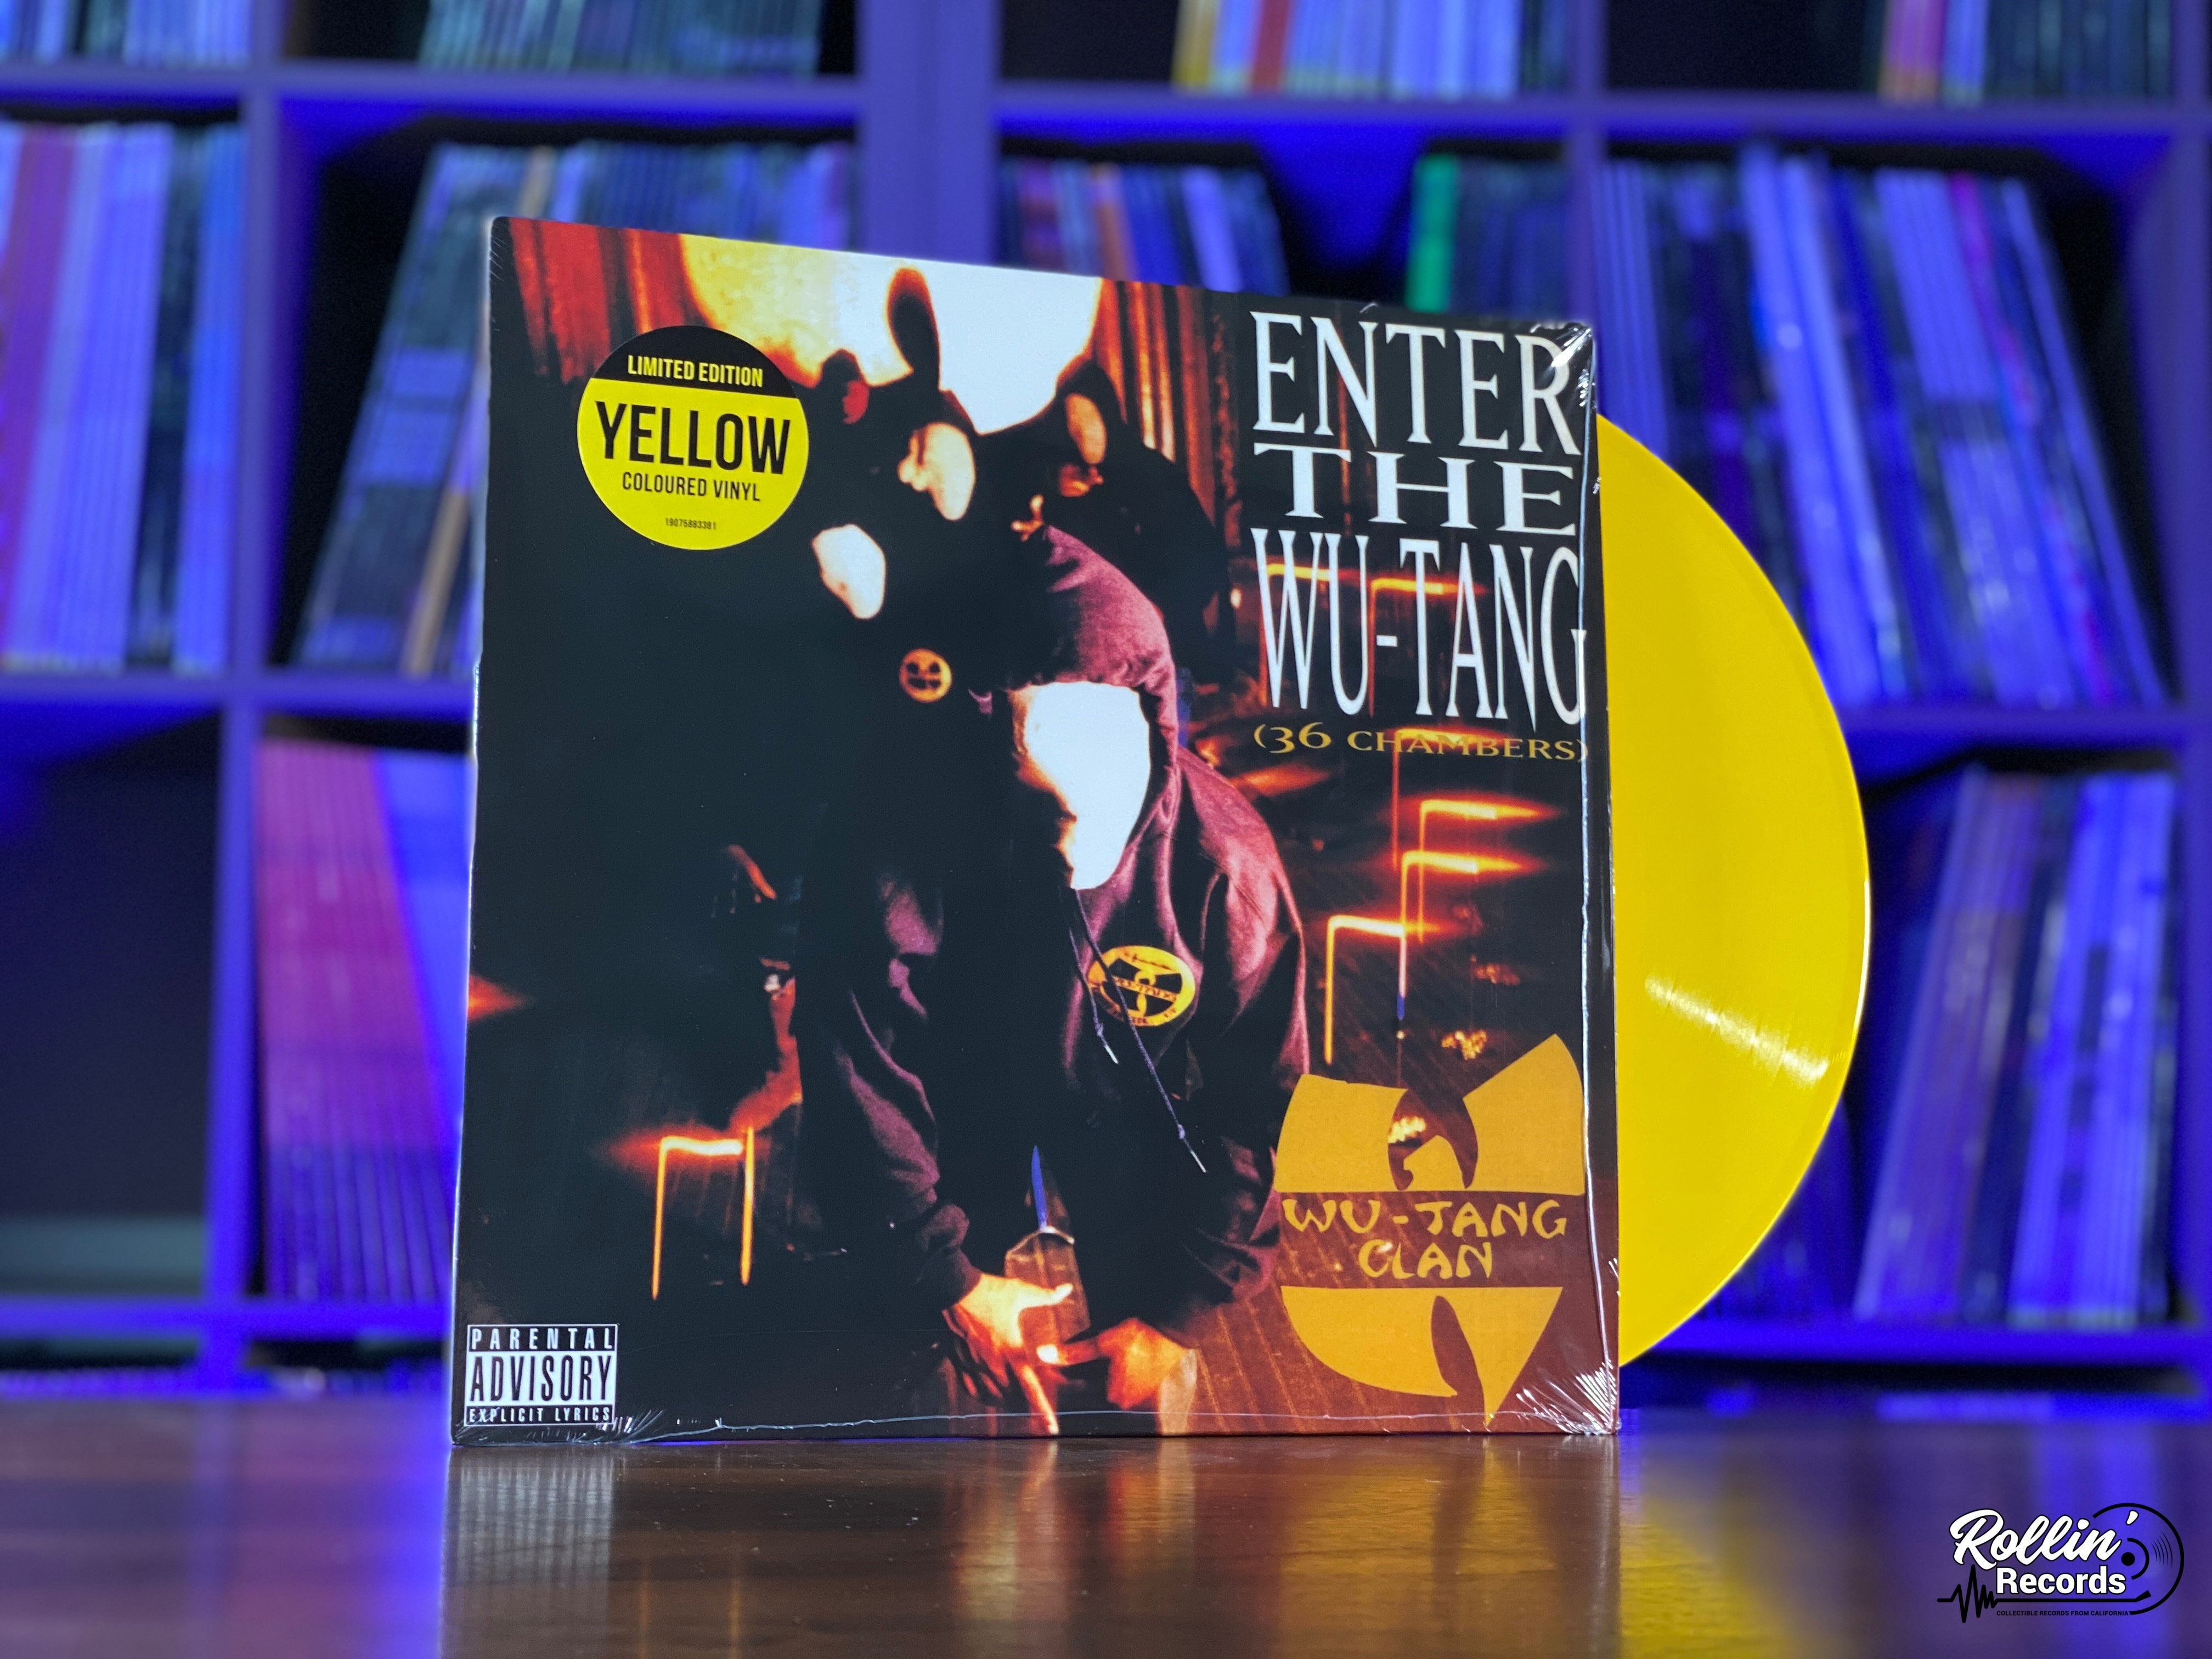  Enter The Wu-Tang: CDs & Vinyl